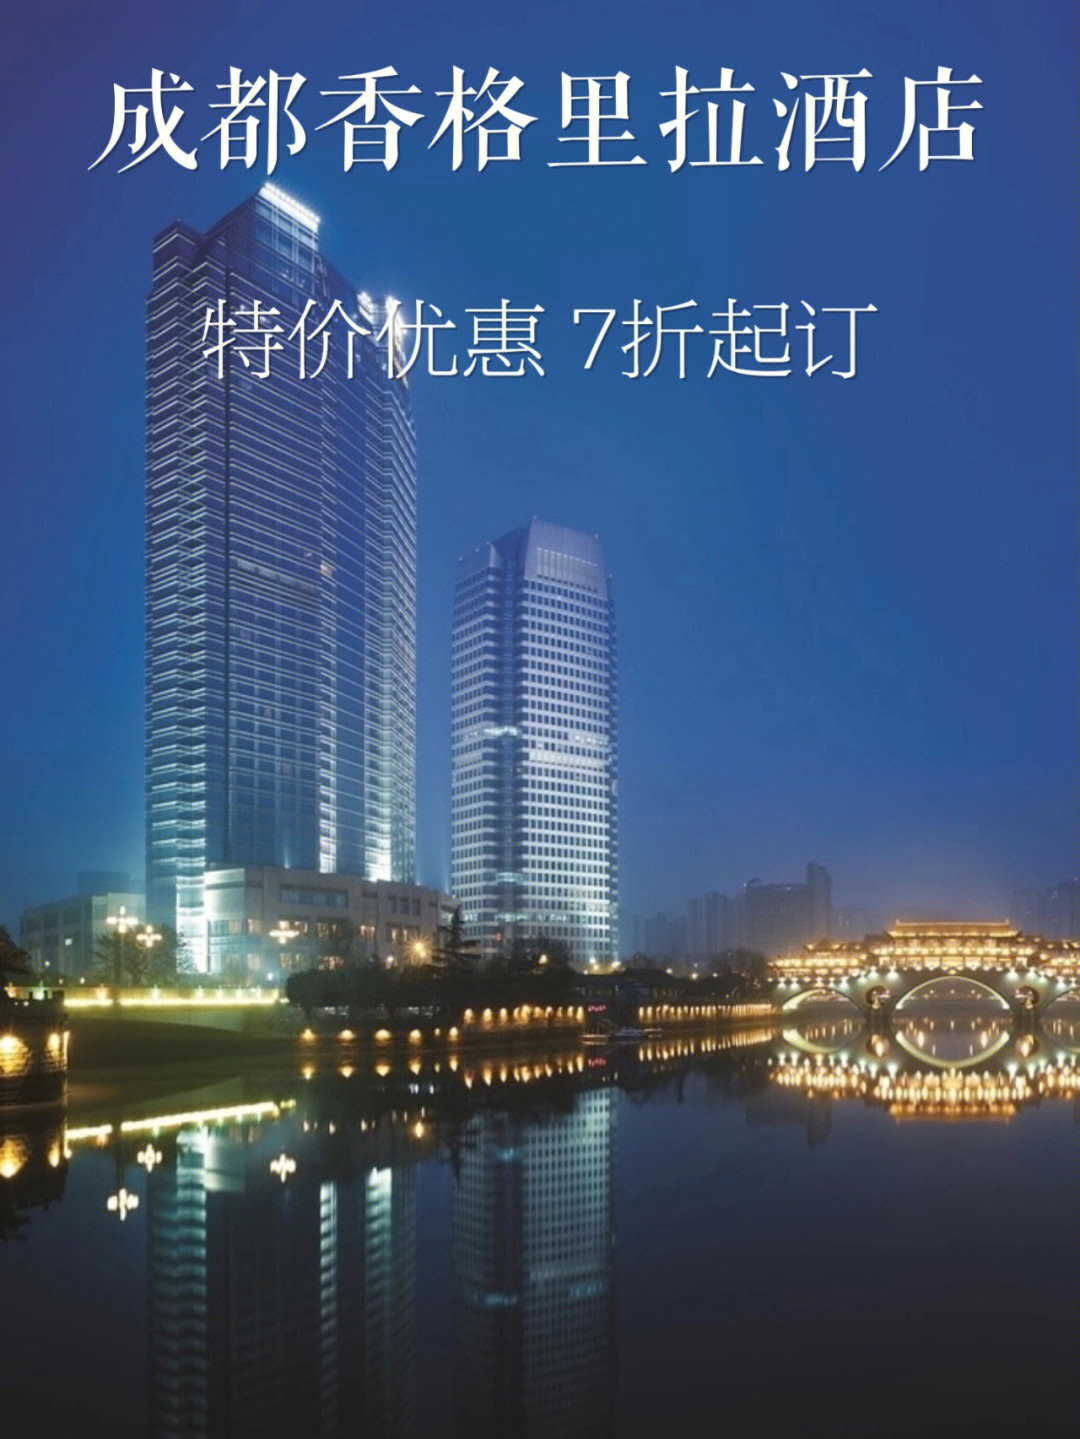 成都香格里拉酒店logo图片